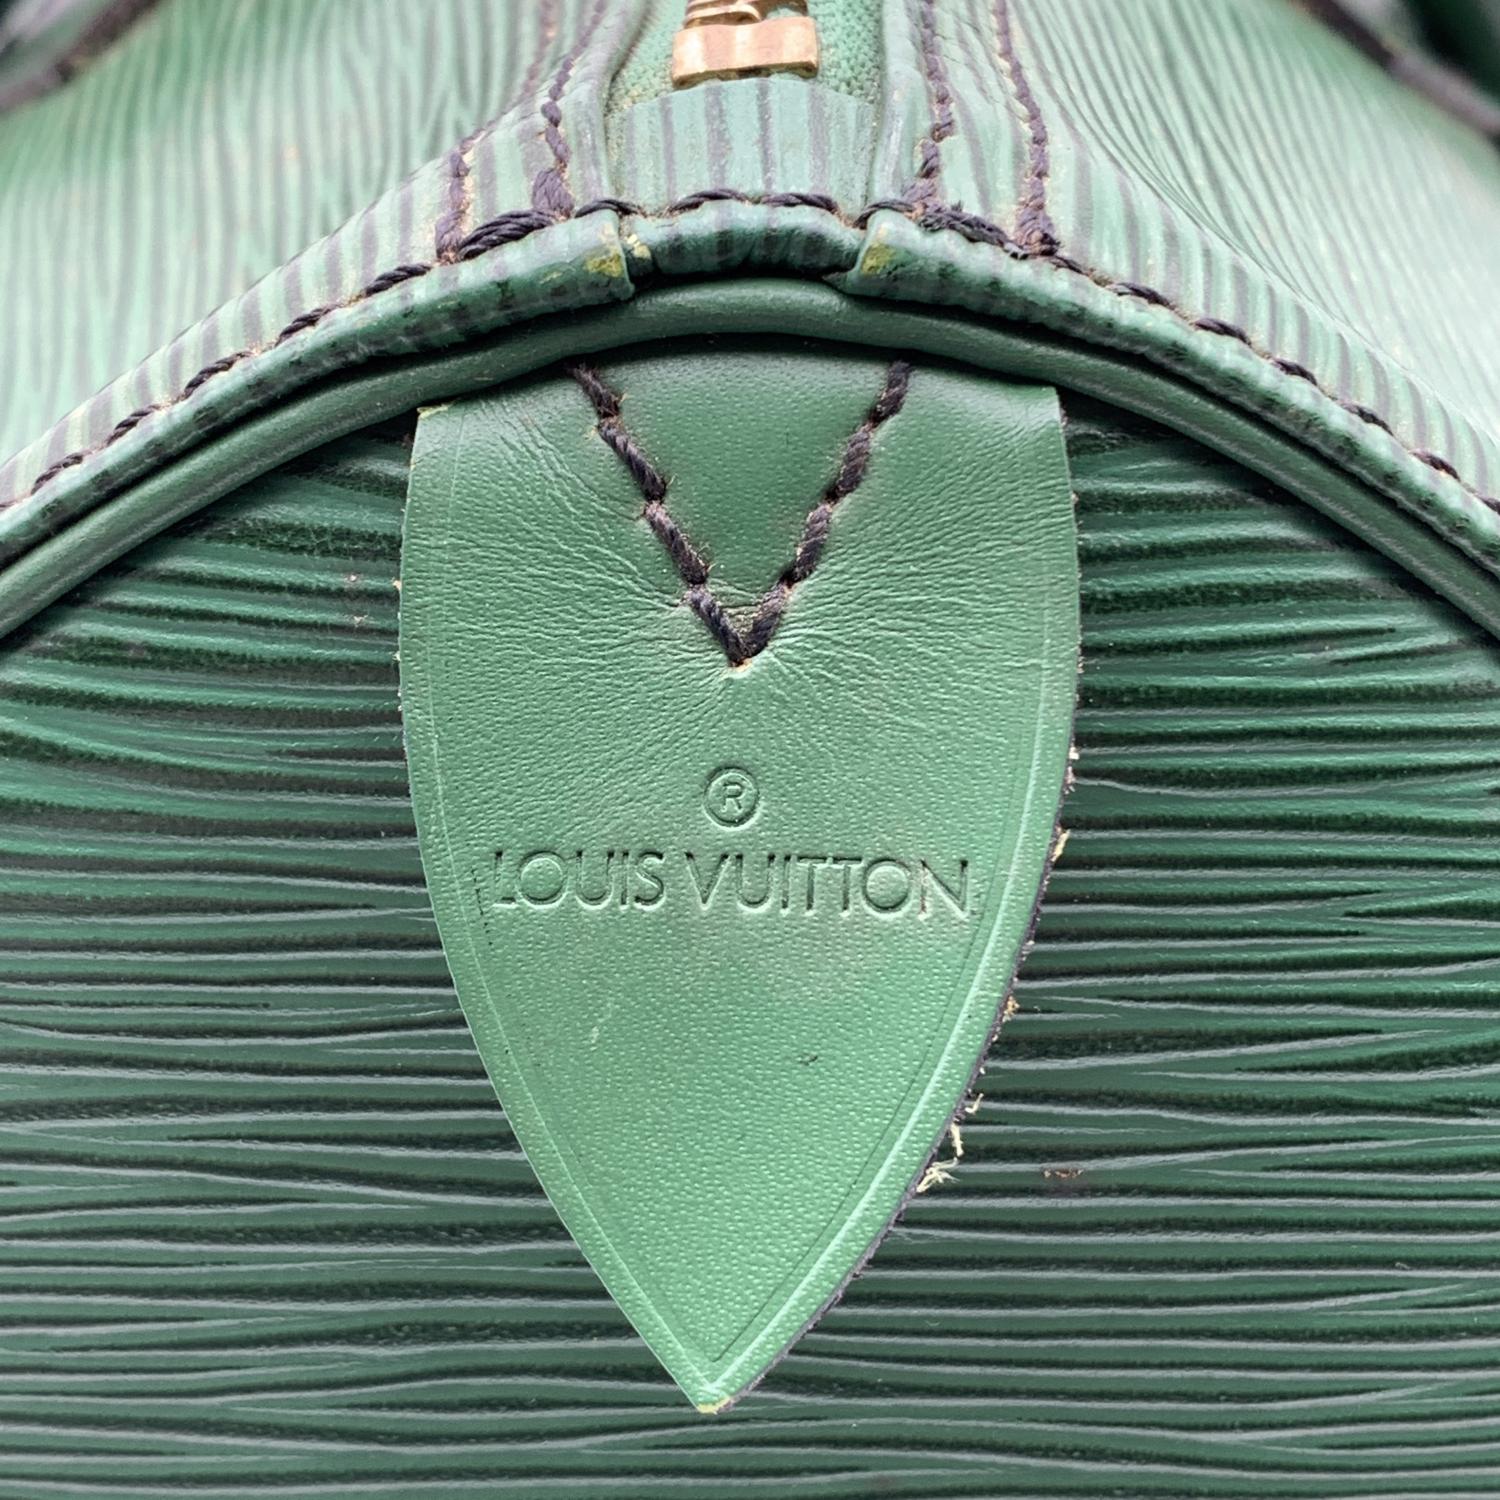 Louis Vuitton Vintage Green Epi Leather Speedy 35 Boston Bag Handbag 3